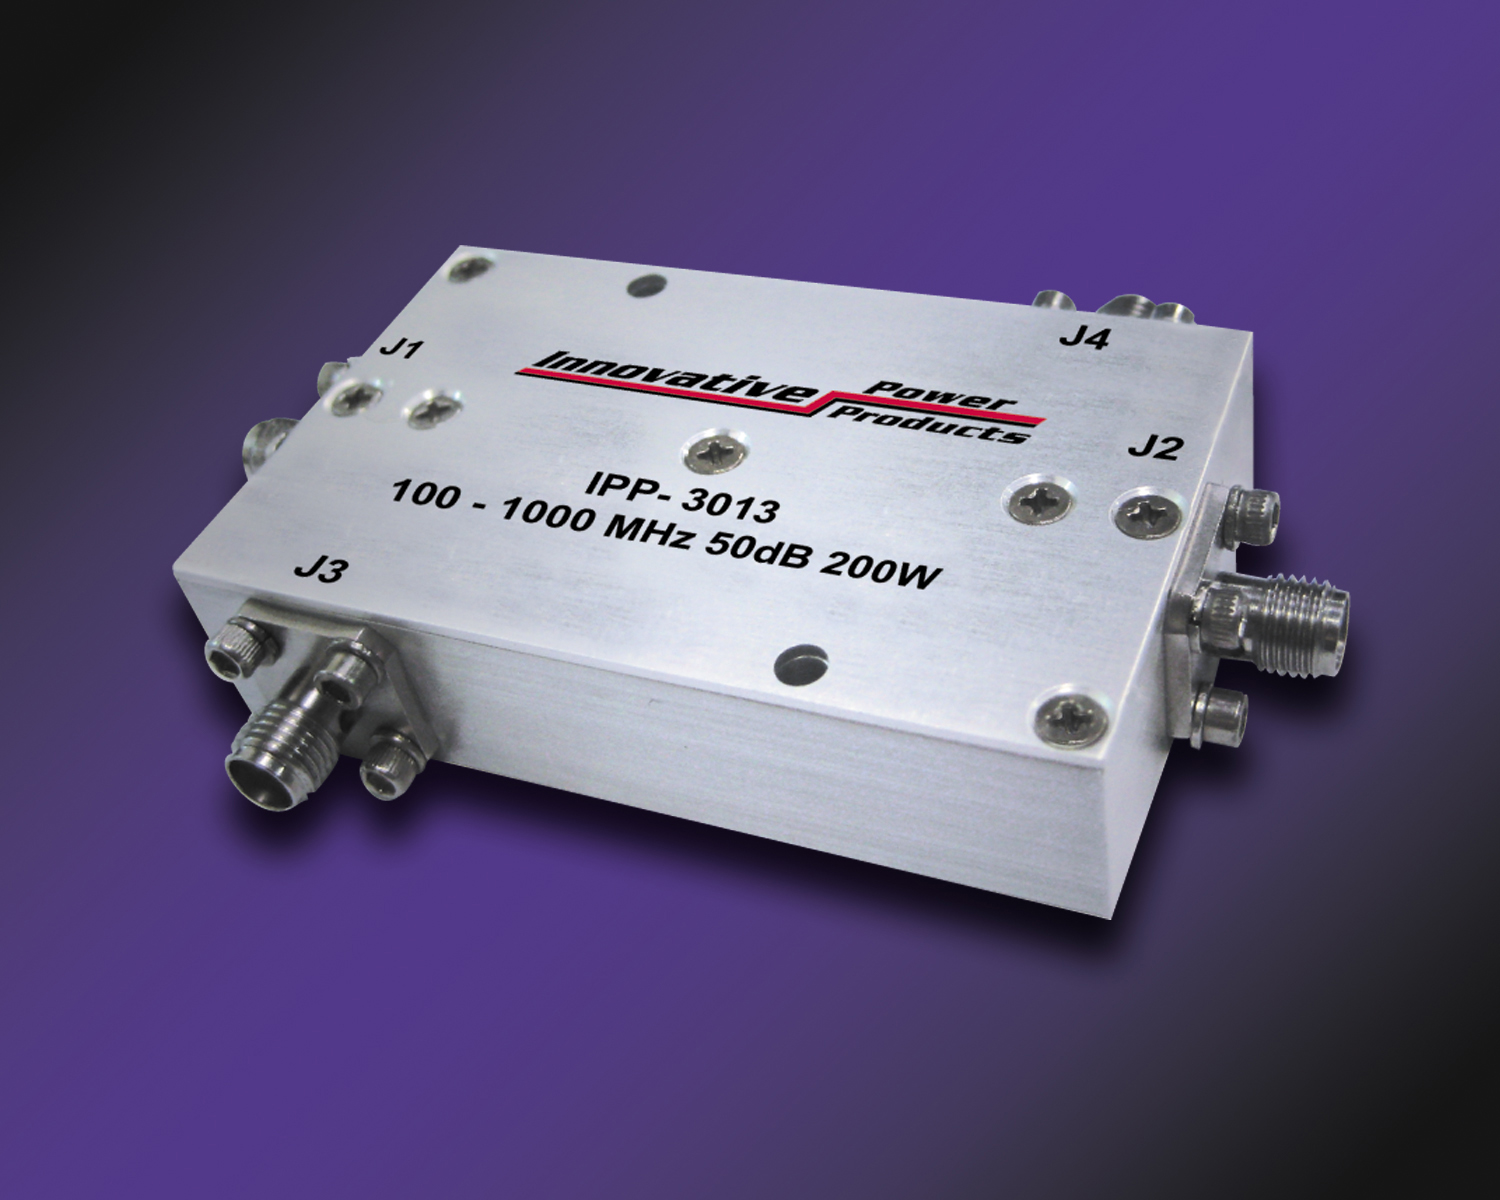 Details about   Innovant Puissance Produits RF Double Directionnel Coupler.IPP-2234 80-1000MHz 